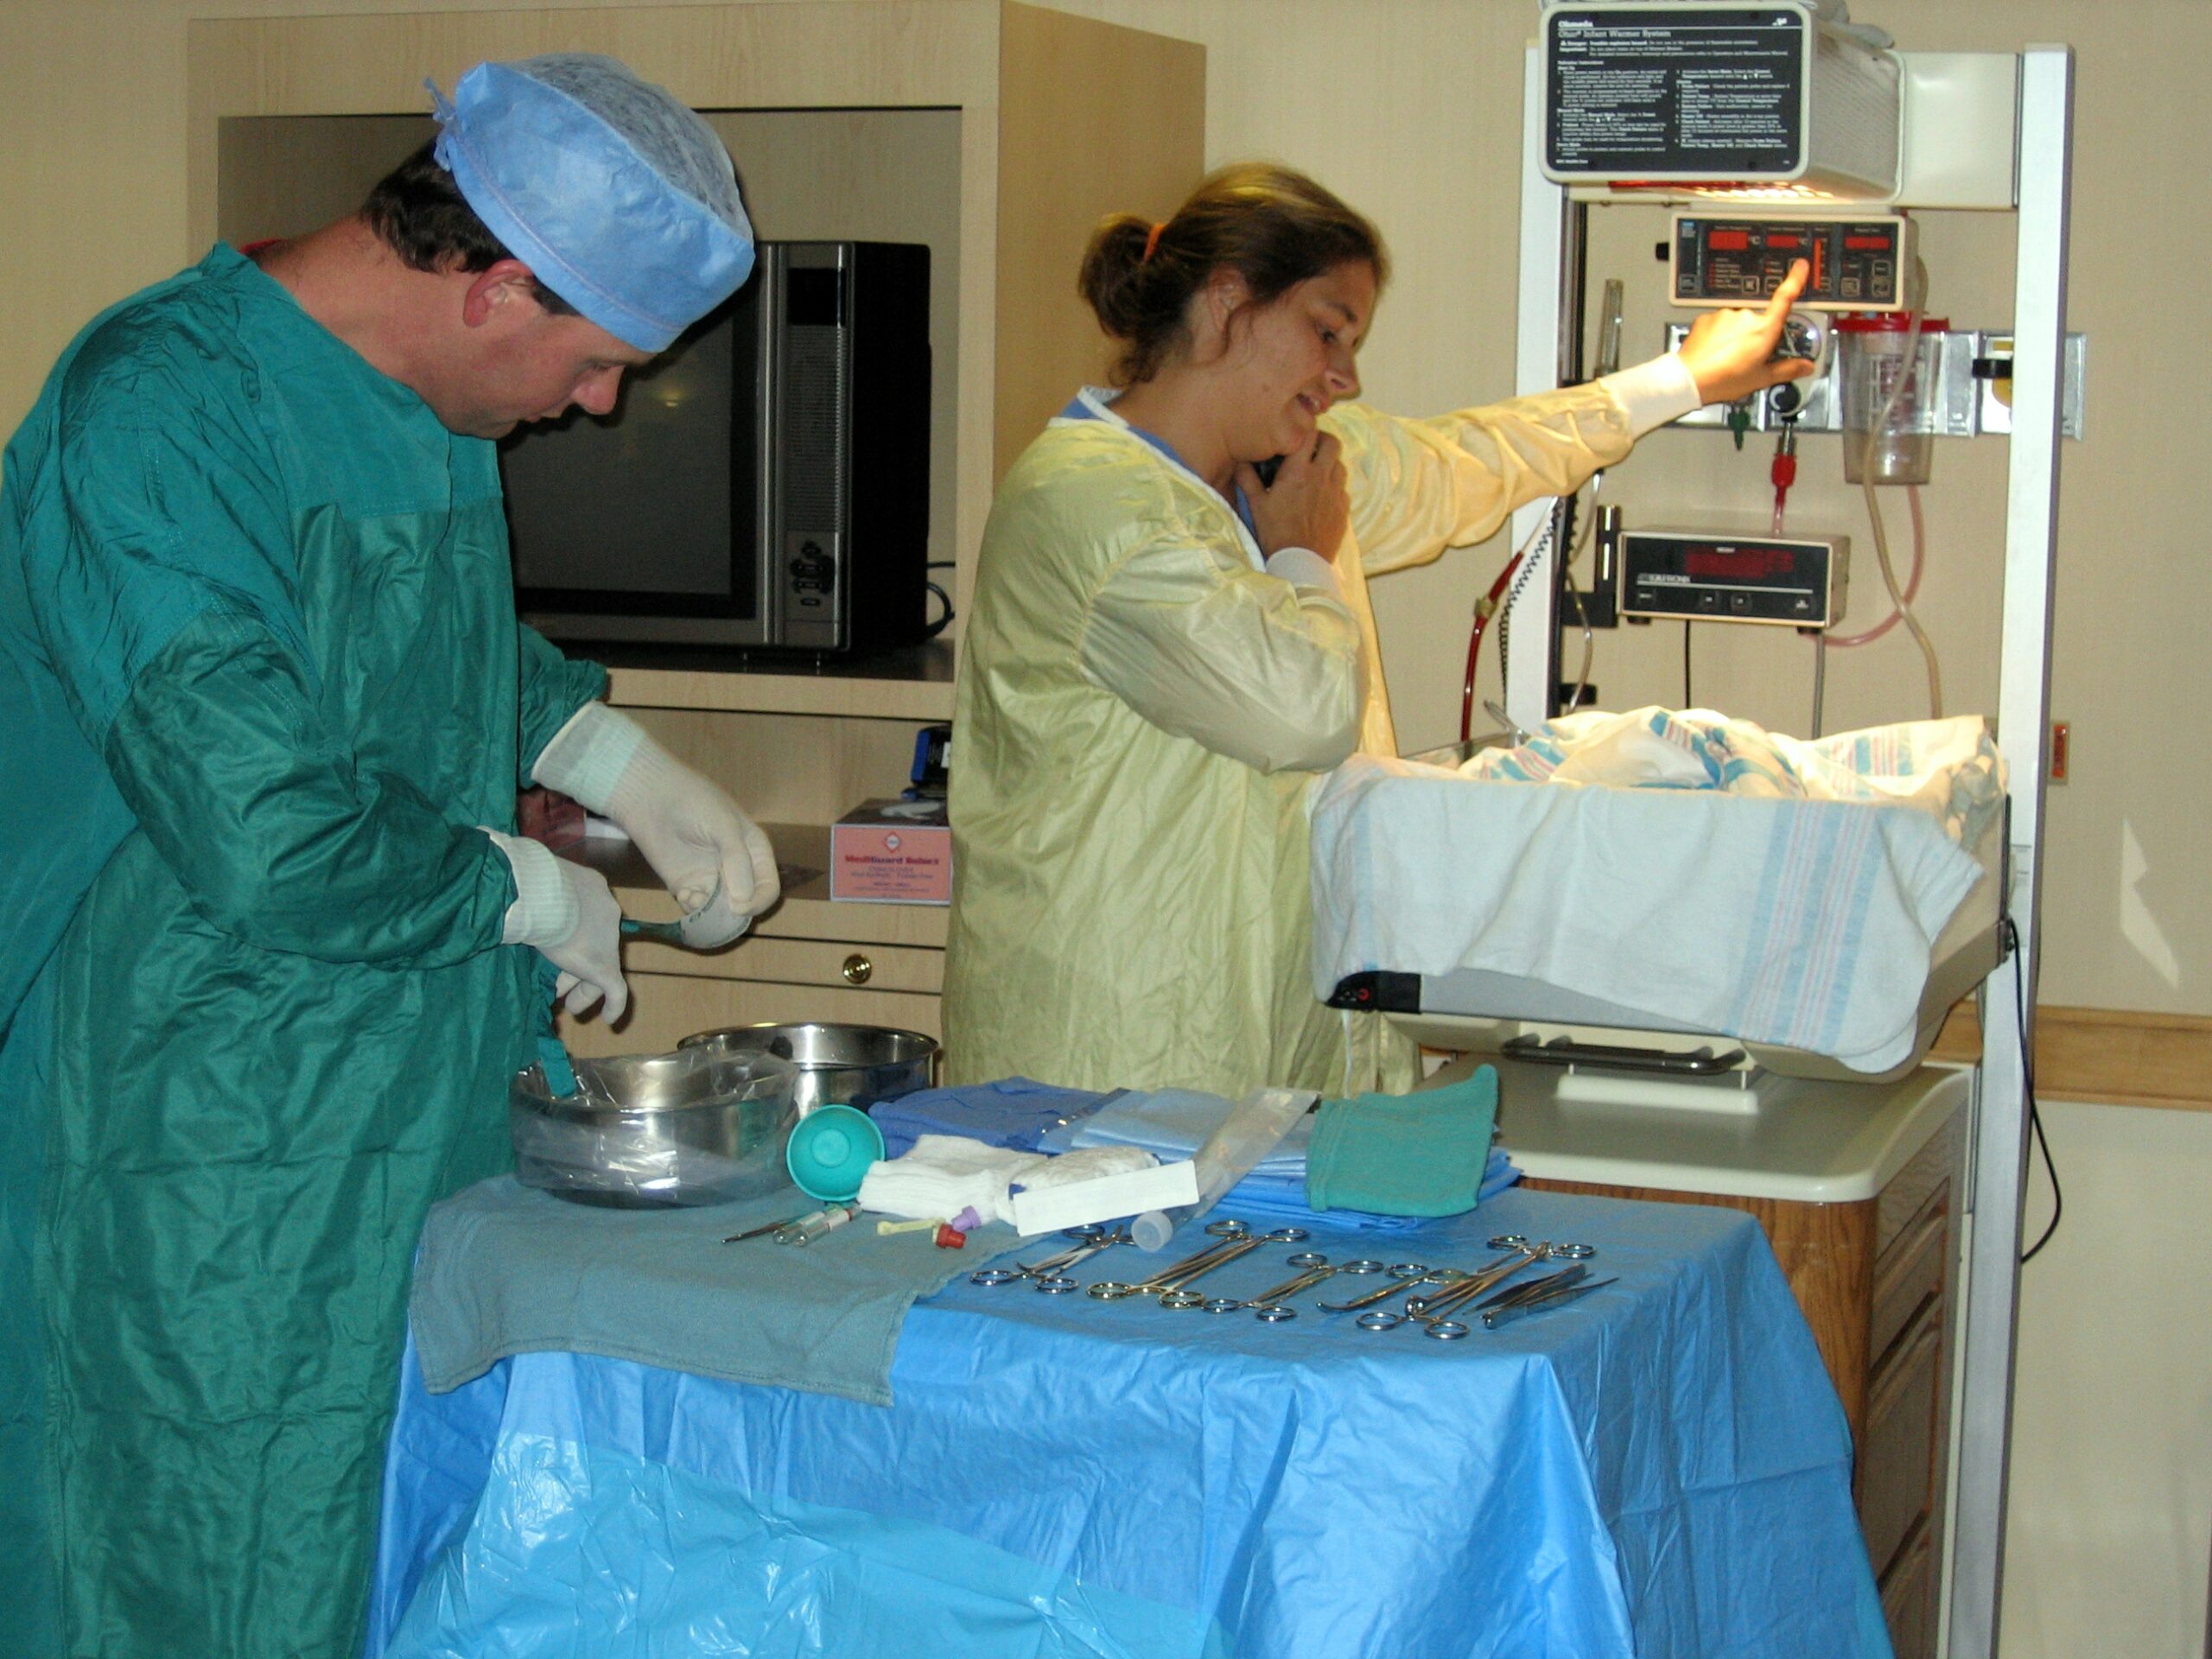 Healthcare providers preparing for a procedure.